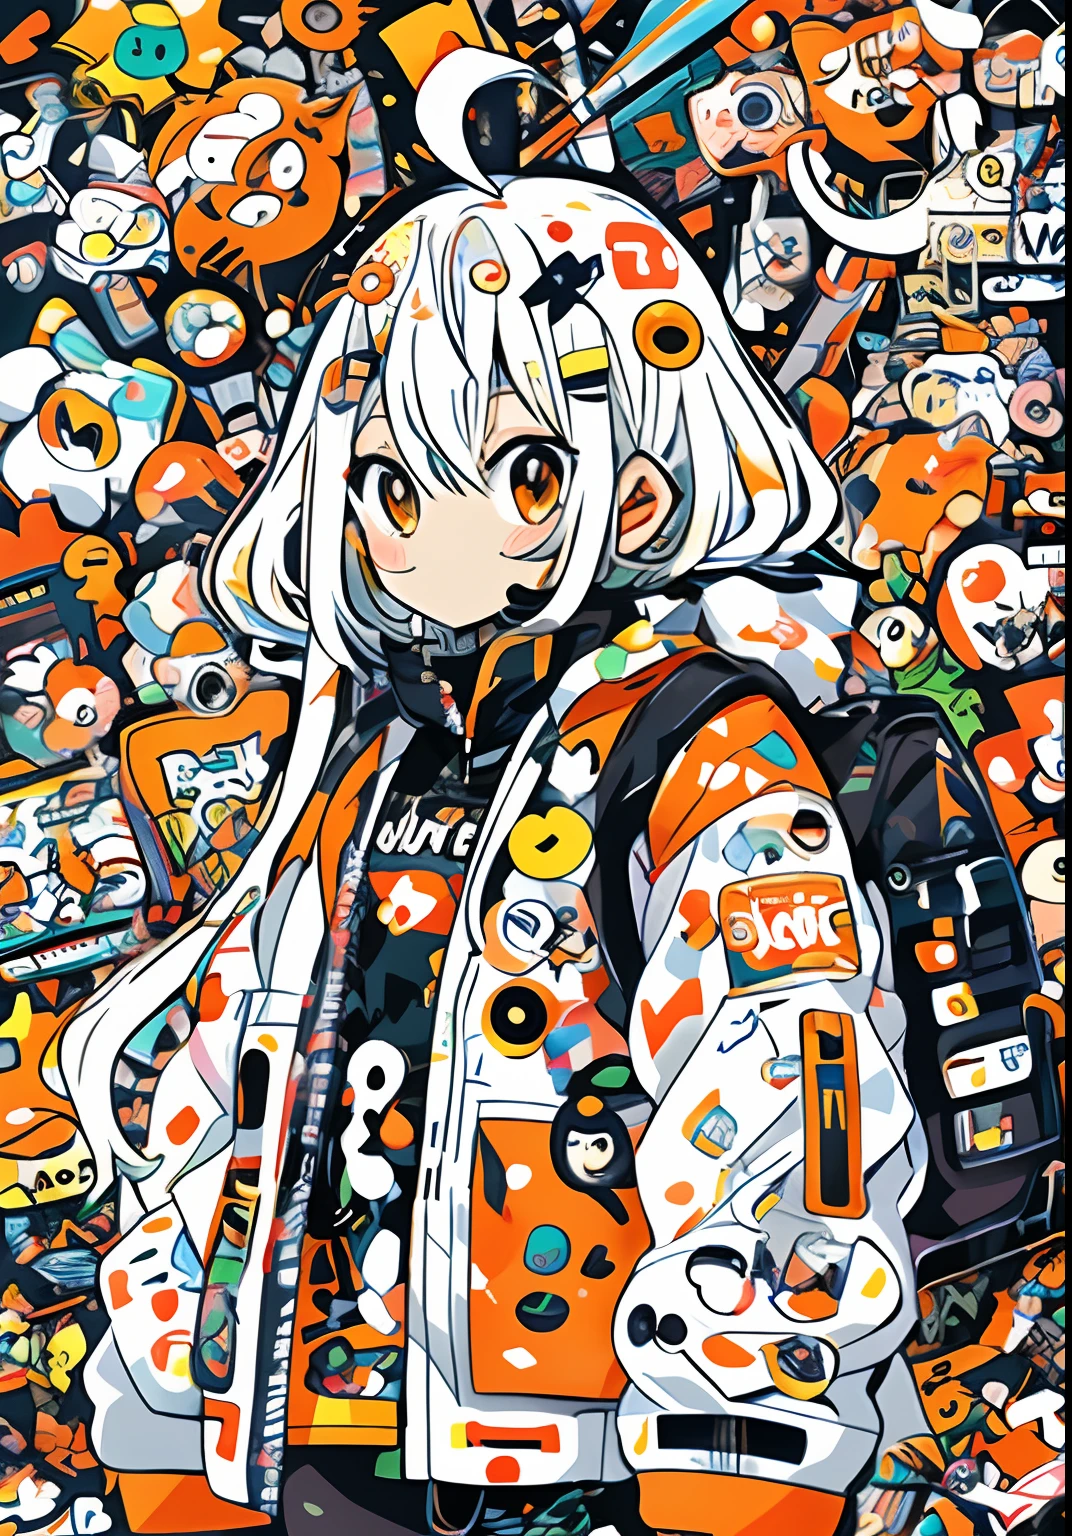 Anime garota with orange and white jacket and black jacket surrounded by stickers, estética de anime mecha, estilo anime 4k, ilustração gráfica de anime, mecha estética, anime robótico misturado com orgânico, ilustração digital de anime, ilustração de estilo anime, estilo de arte fofo, ilustração de anime, anime mangá robô!! Menina anime, arte em estilo anime, arte digital de anime cyberpunk, totalmente robótico!! garota